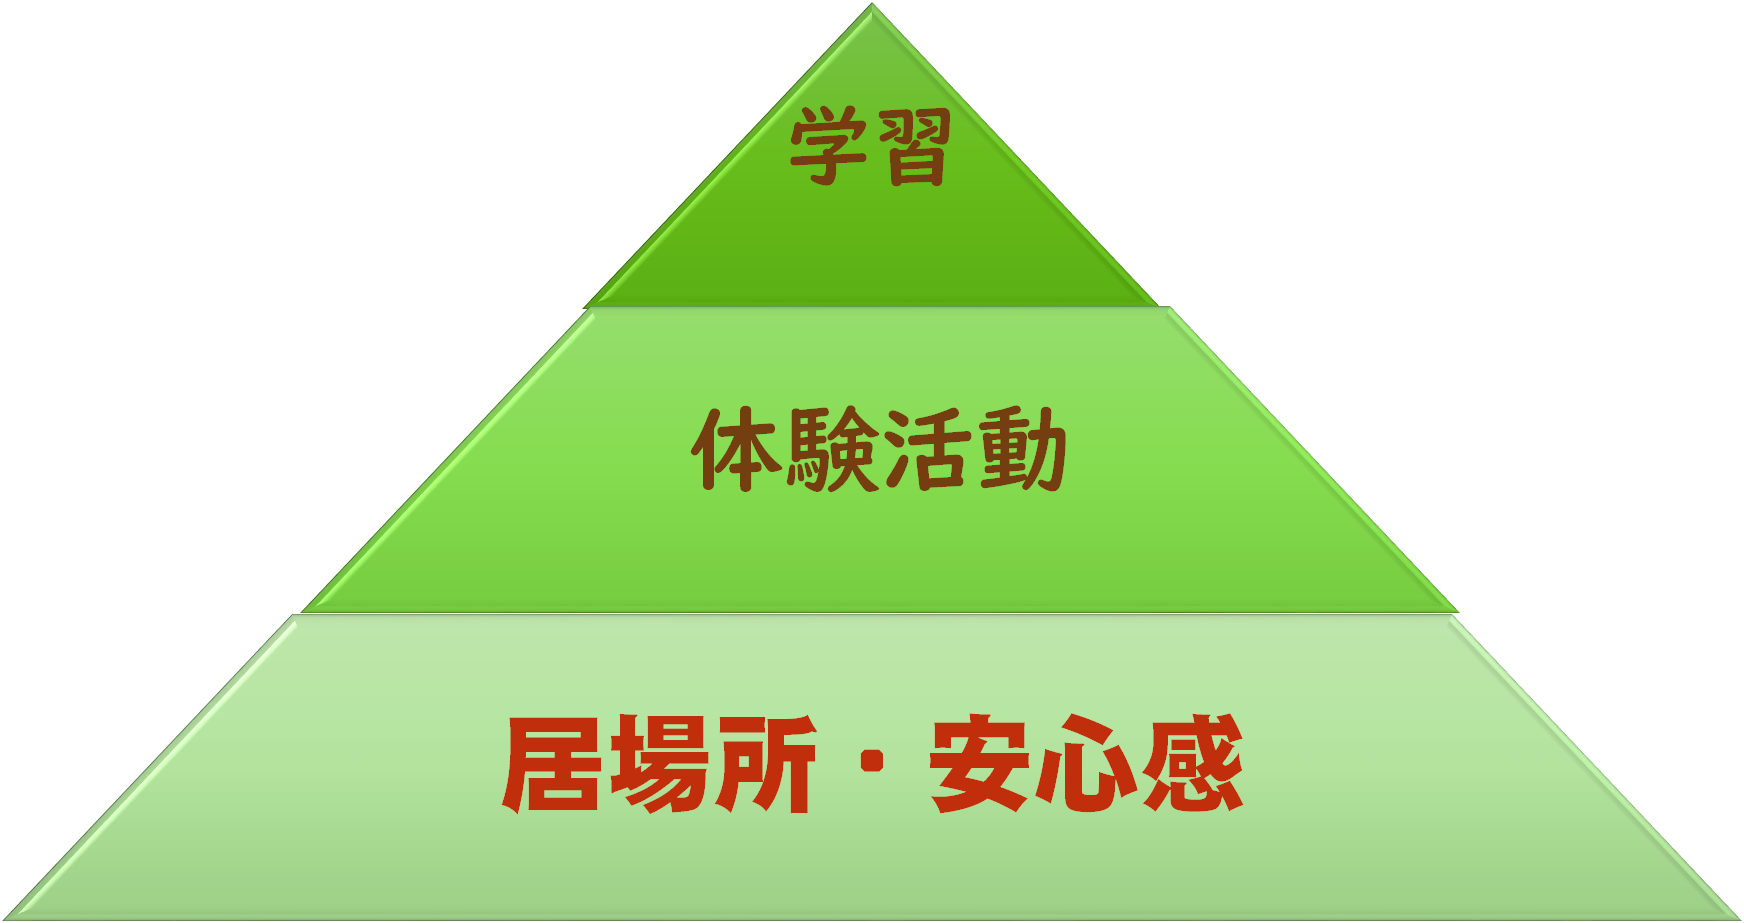 「ASU」の3つの柱のピラミッド